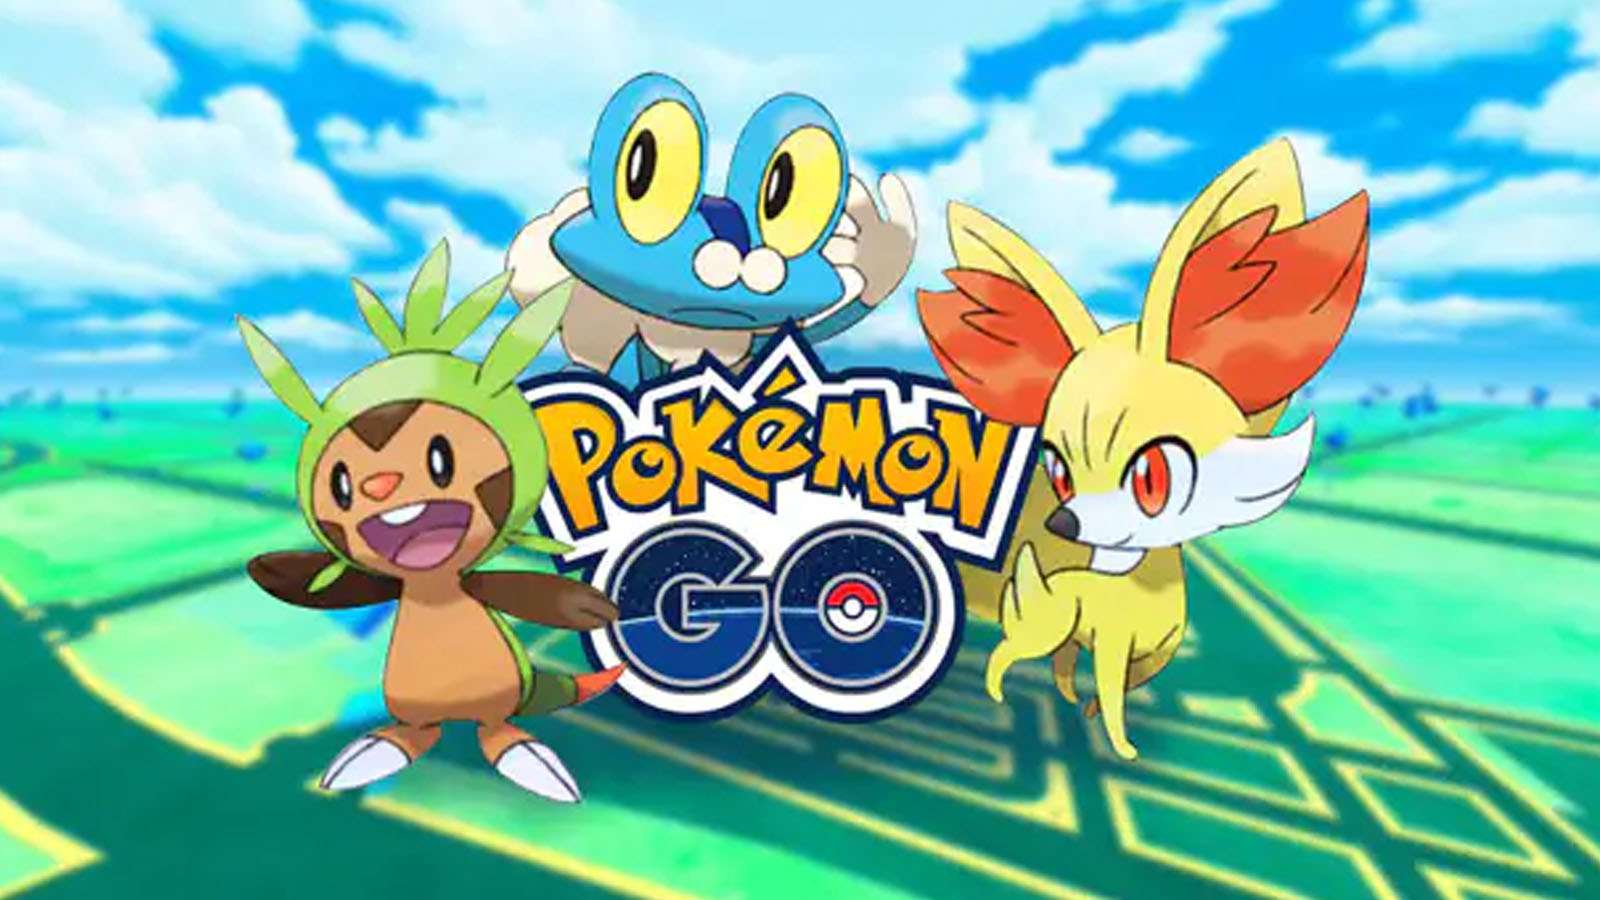 Pokémon Go iniciales sexta generación